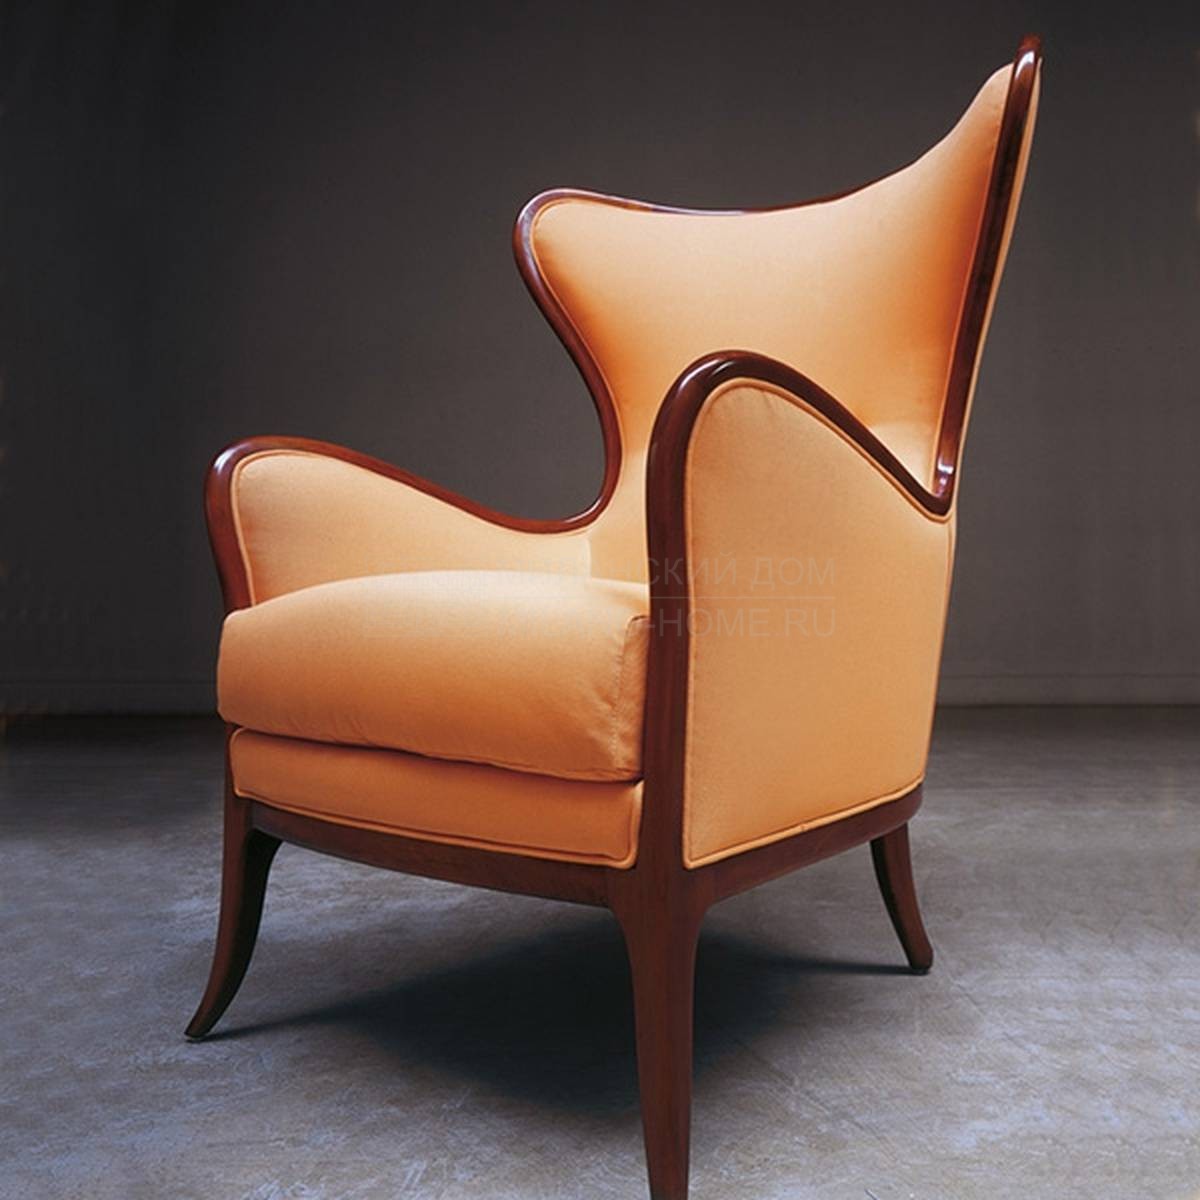 Каминное кресло art.565 Ottocento из Италии фабрики MEDEA